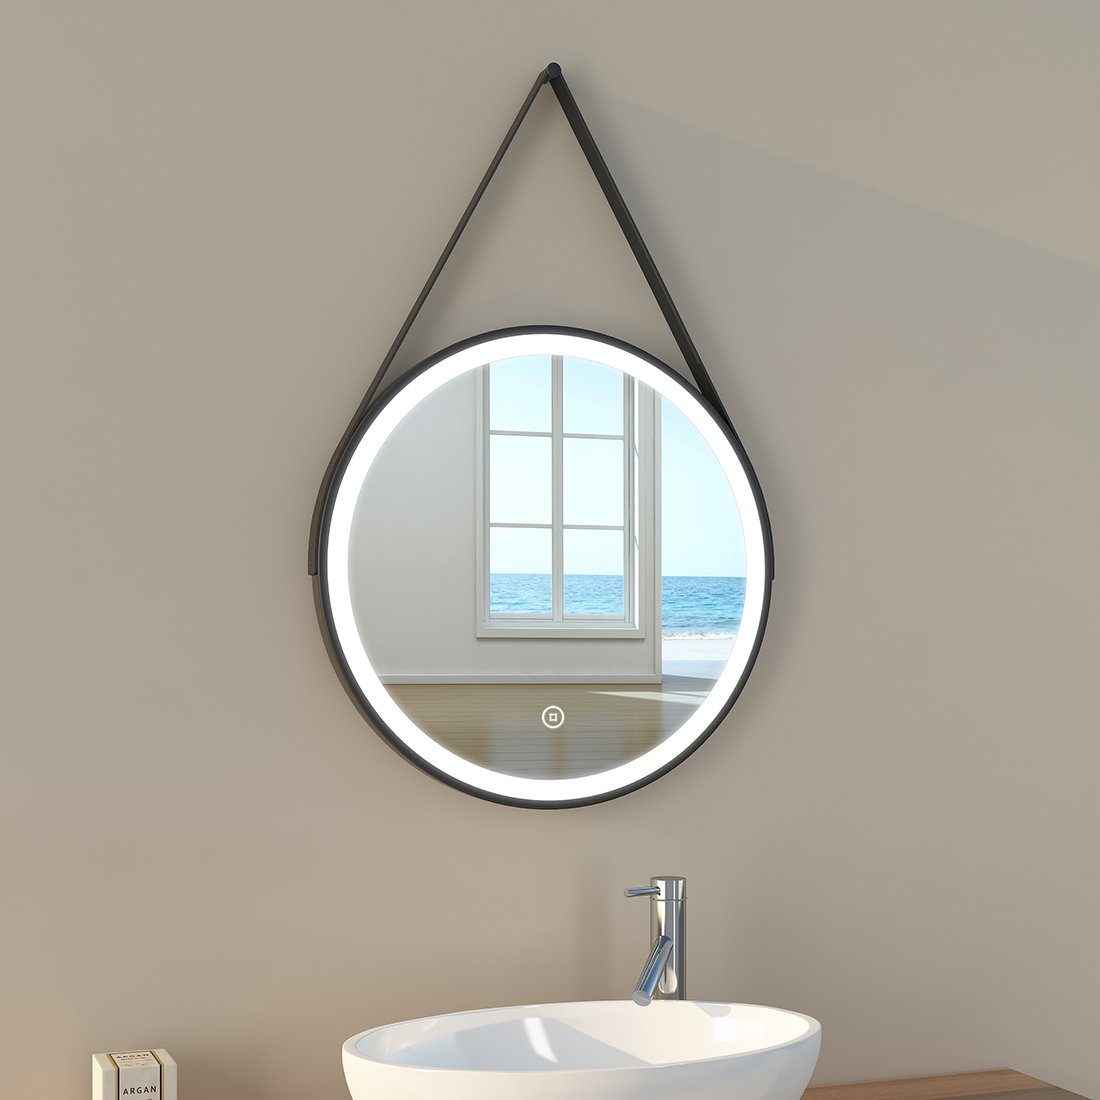 EMKE Badspiegel EMKE Badezimmerspiegel mit Beleuchtung LED Badspiegel Wandspiegel, mit Touch-Schalter Runder BadSpiegel Energiesparend Lichtspiegel